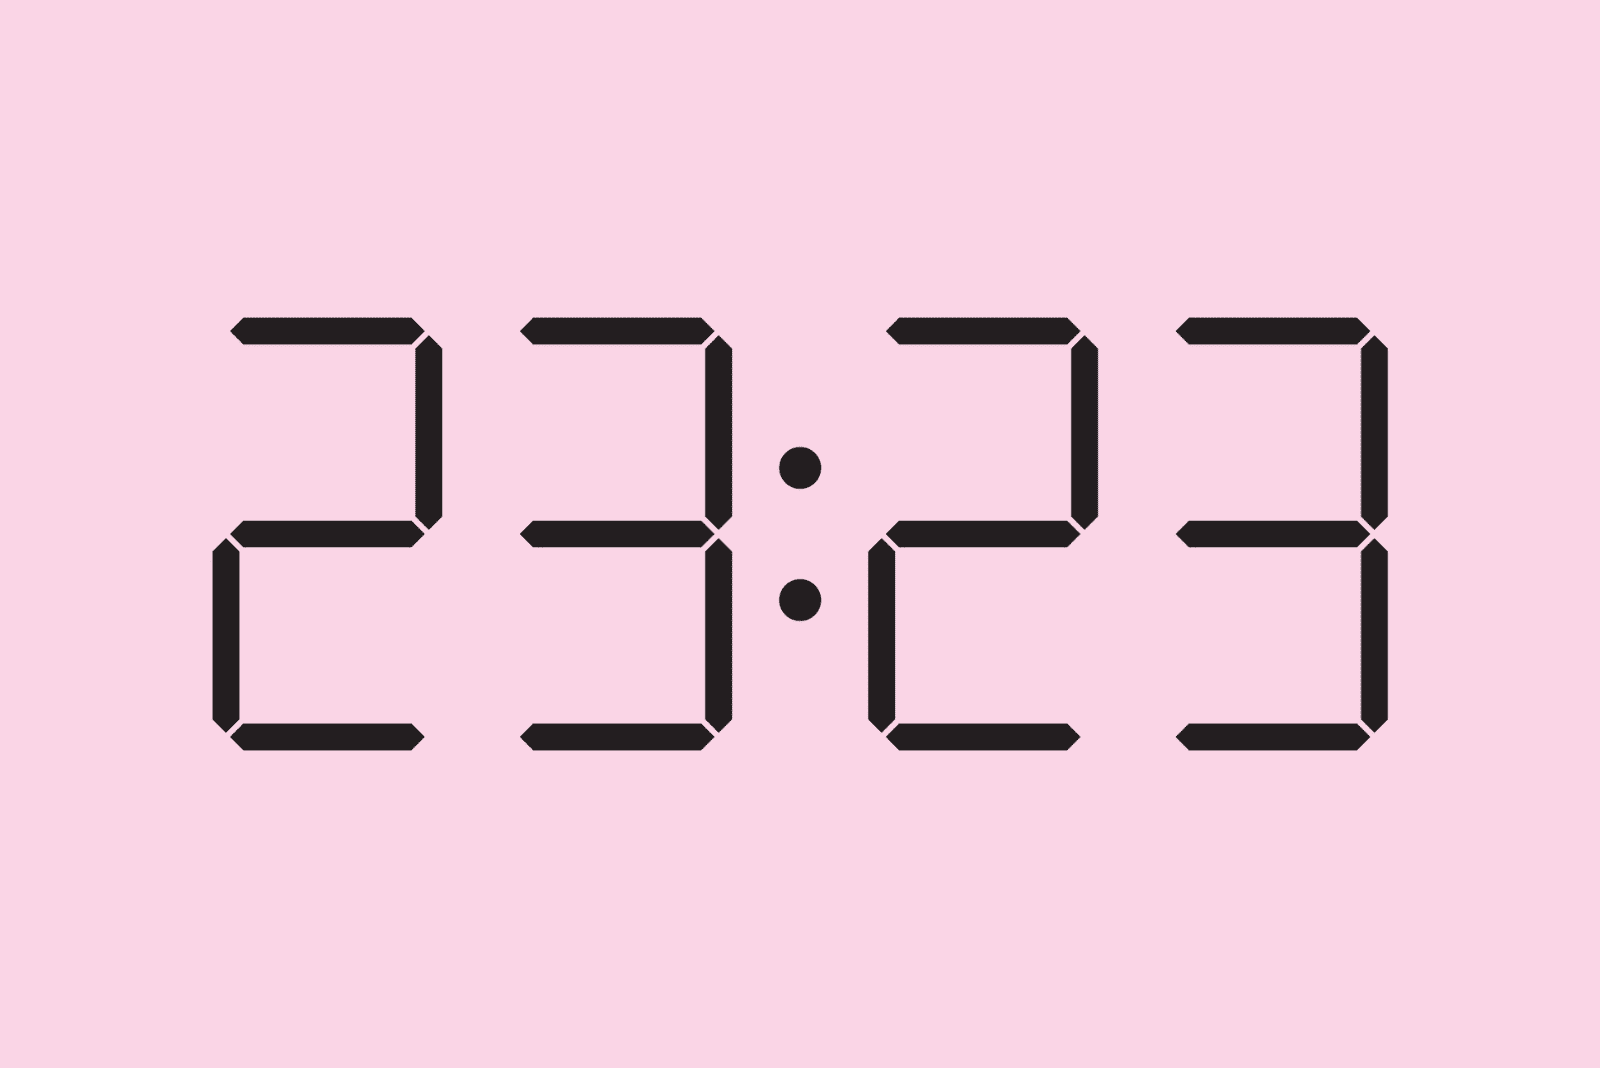 23:23 auf der Uhr